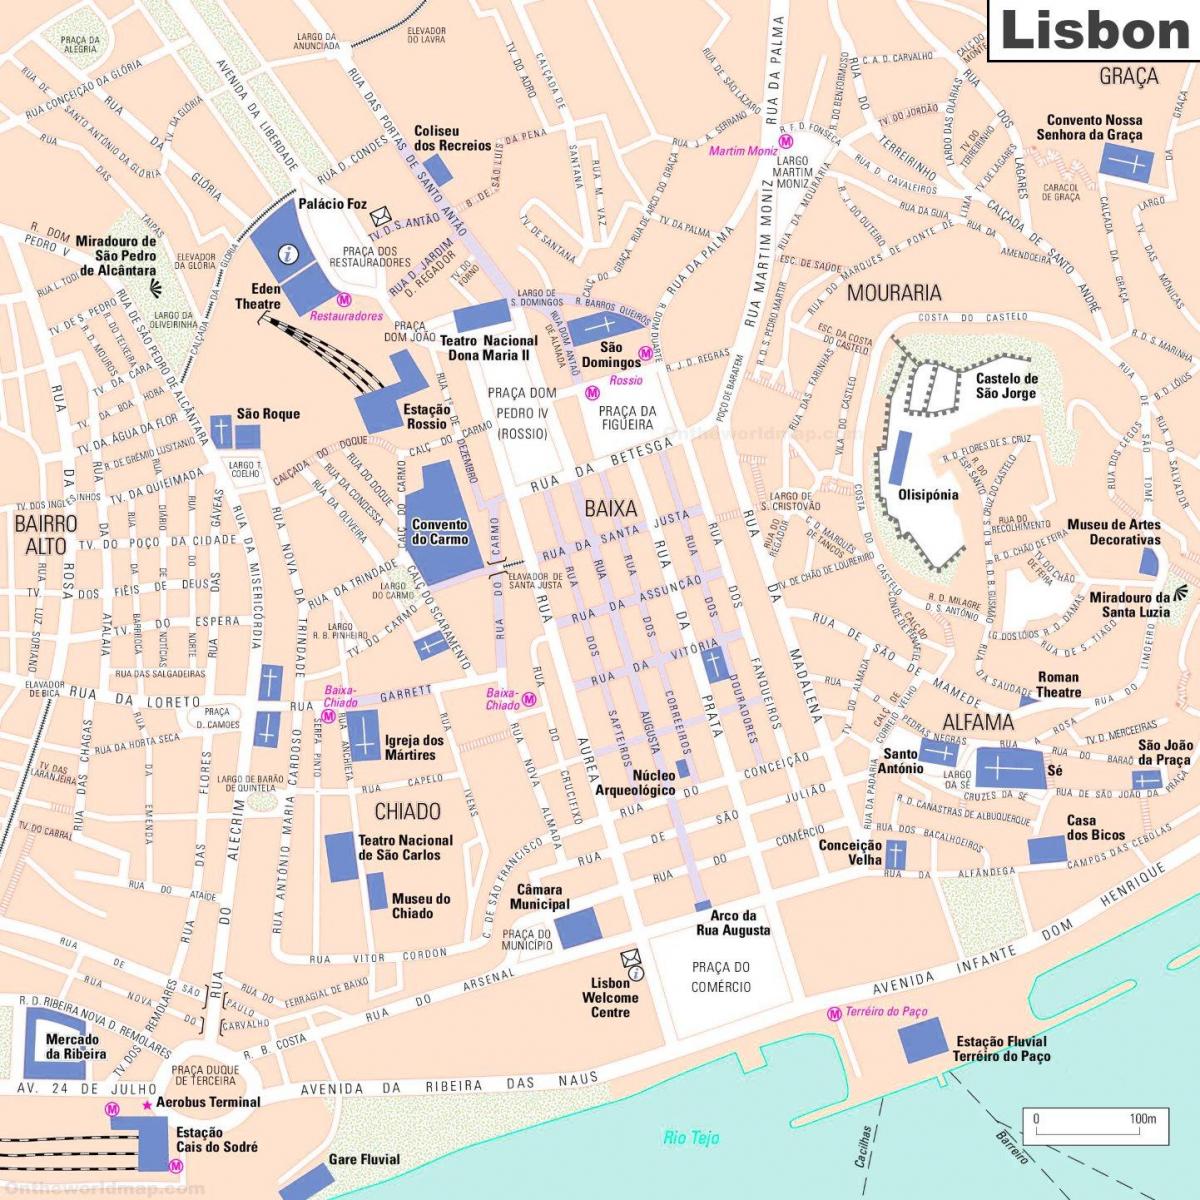 Lisbon city center map